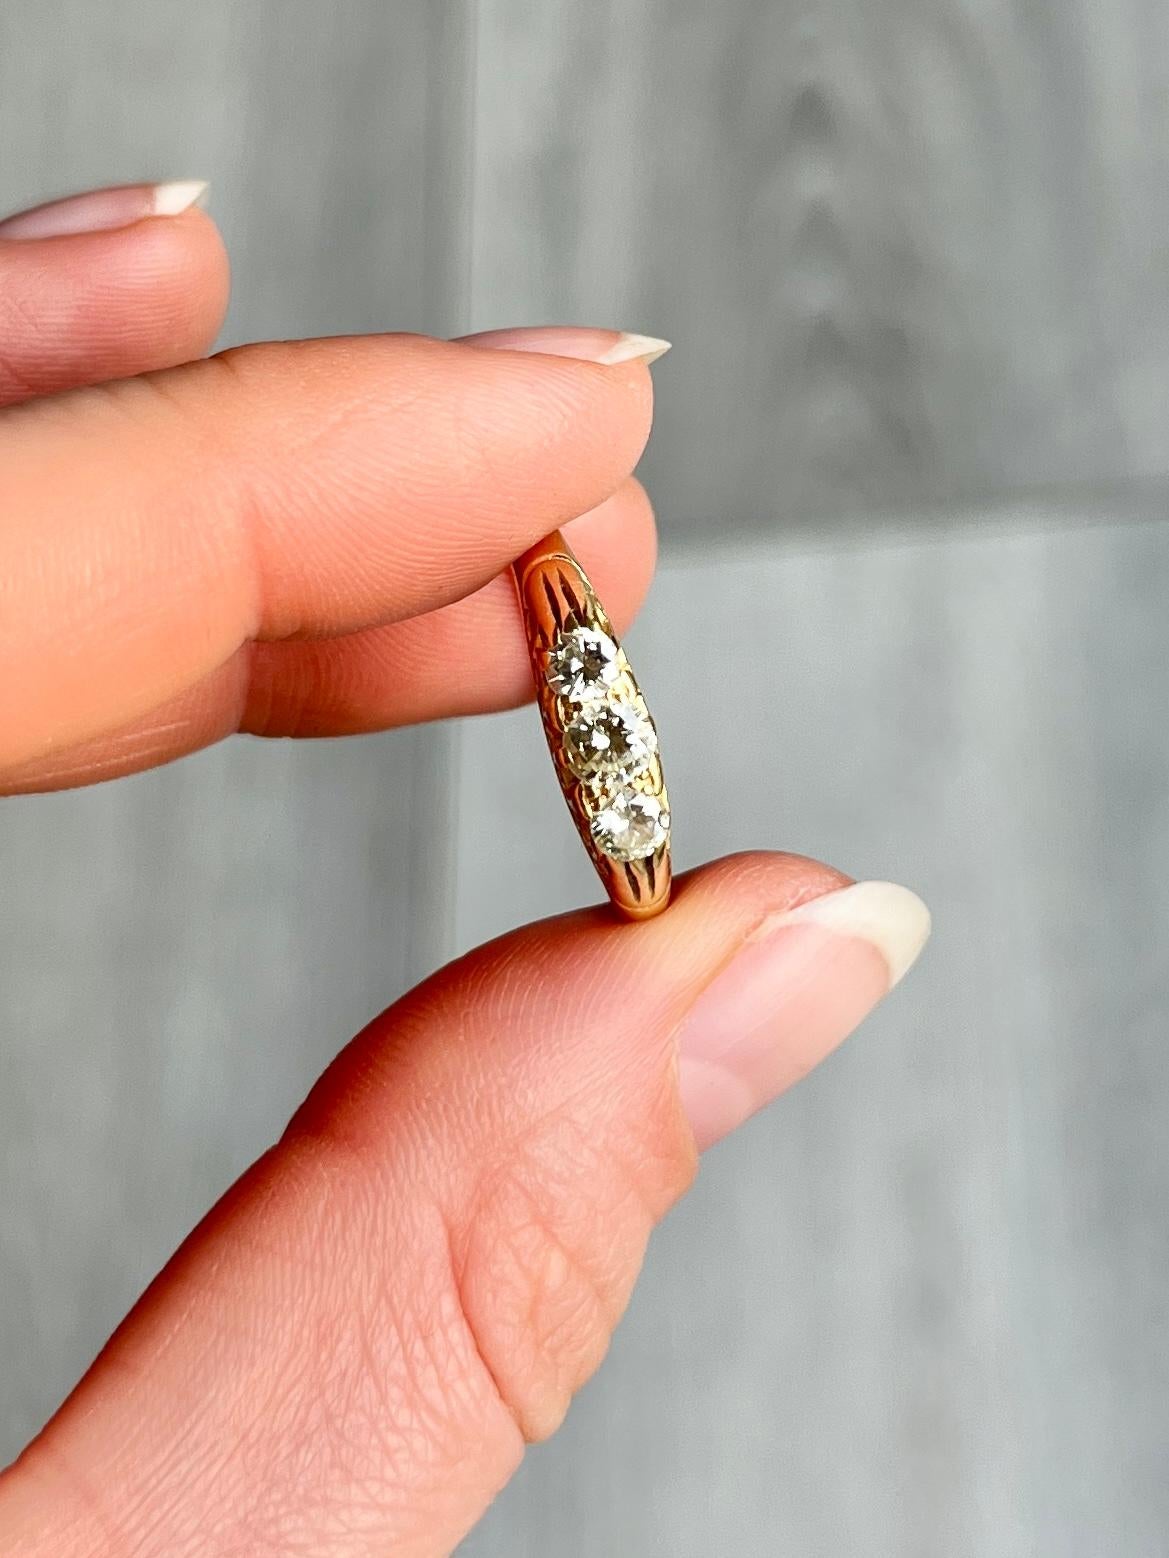 Ein wunderschöner Diamantring mit drei Steinen aus 18 Karat Gold. Der zentrale Diamant misst 25 Pence und die Steine an den Seiten jeweils 15 Pence. 

Ring Größe: O oder 7 1/4 
Höhe ohne Finger: 4mm

Gewicht: 4.1 g